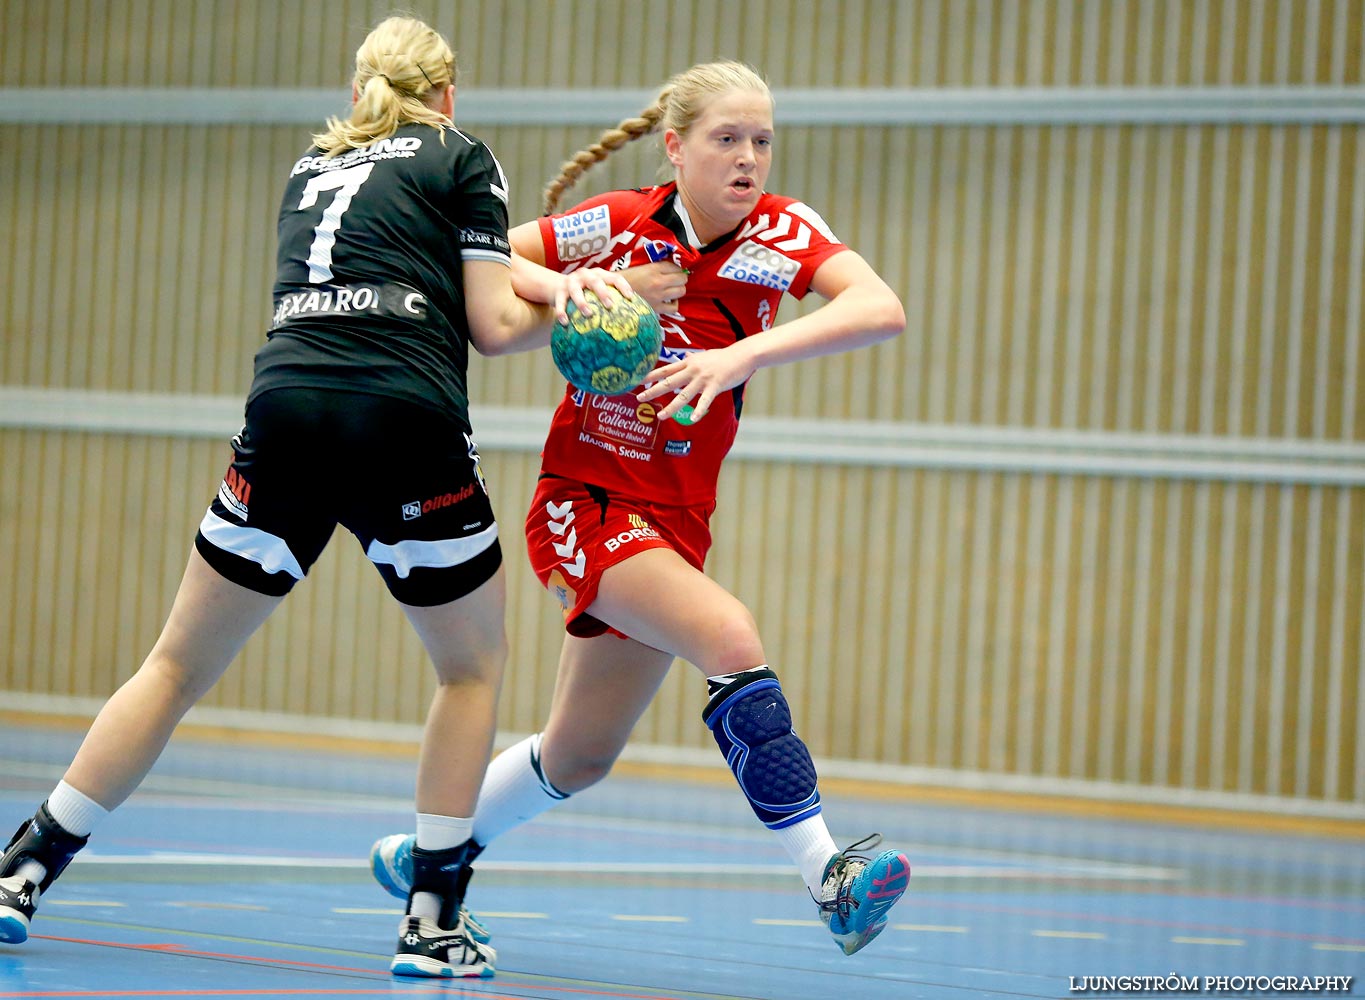 Annliz Cup Elit Strands IF-HF Somby Skövde Vit 26-30,dam,Arena Skövde,Skövde,Sverige,Annliz Cup 2015,Handboll,2015,120798